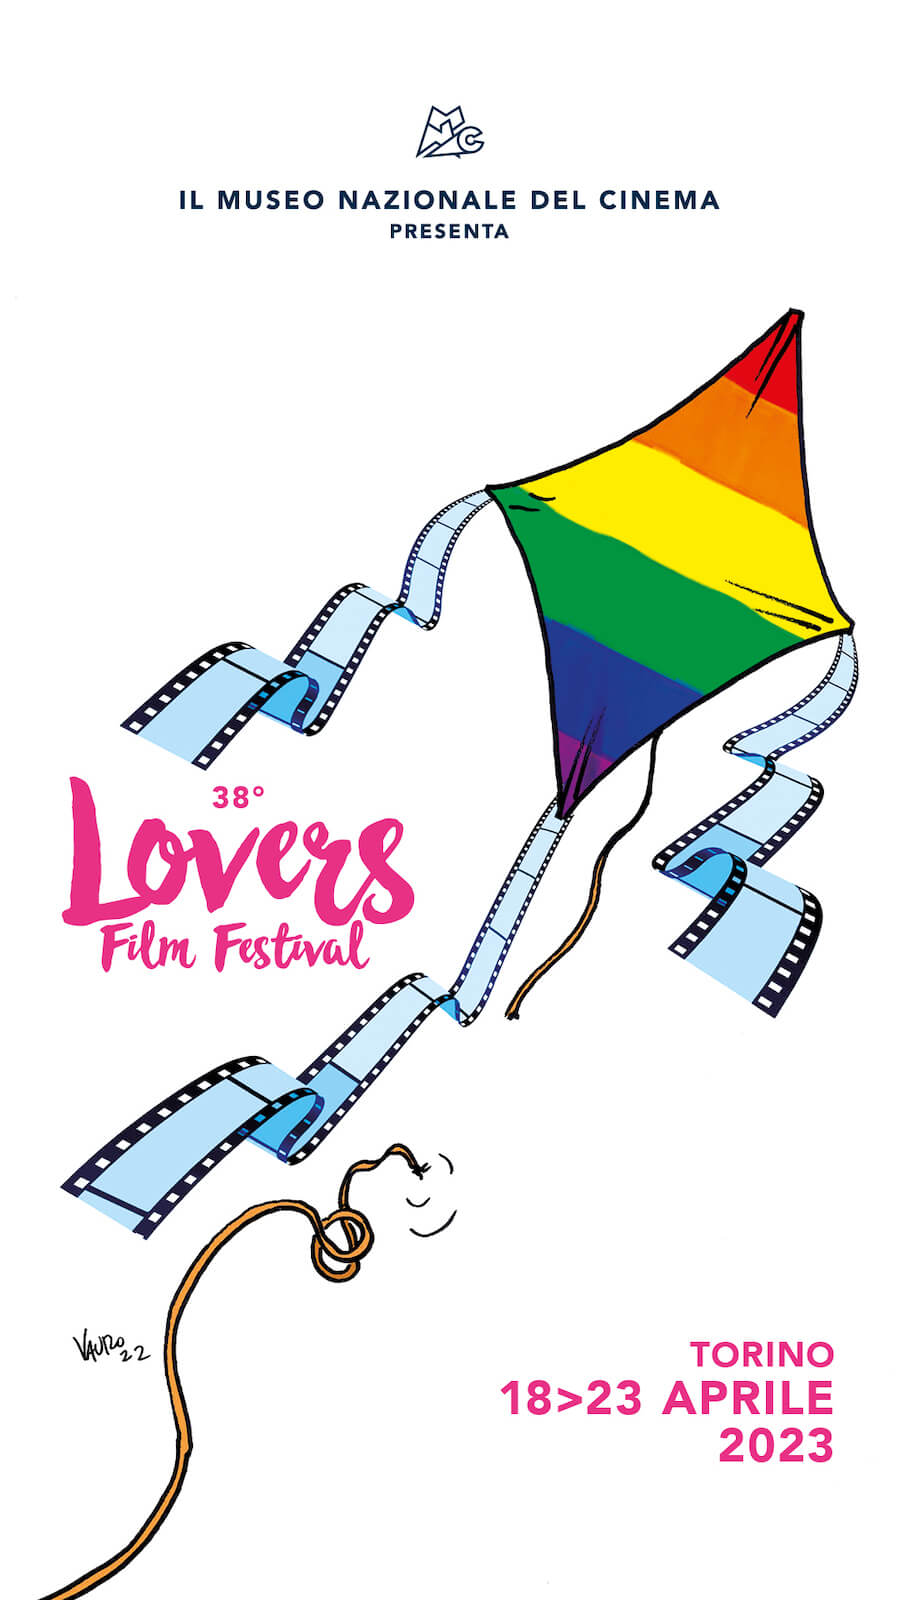 Lovers Film Festival di Torino 2023, Vauro firma la locandina della 38esima edizione - Lovers Film Festival di Torino 2023 Vauro firma la locandina della 38esima edizione - Gay.it